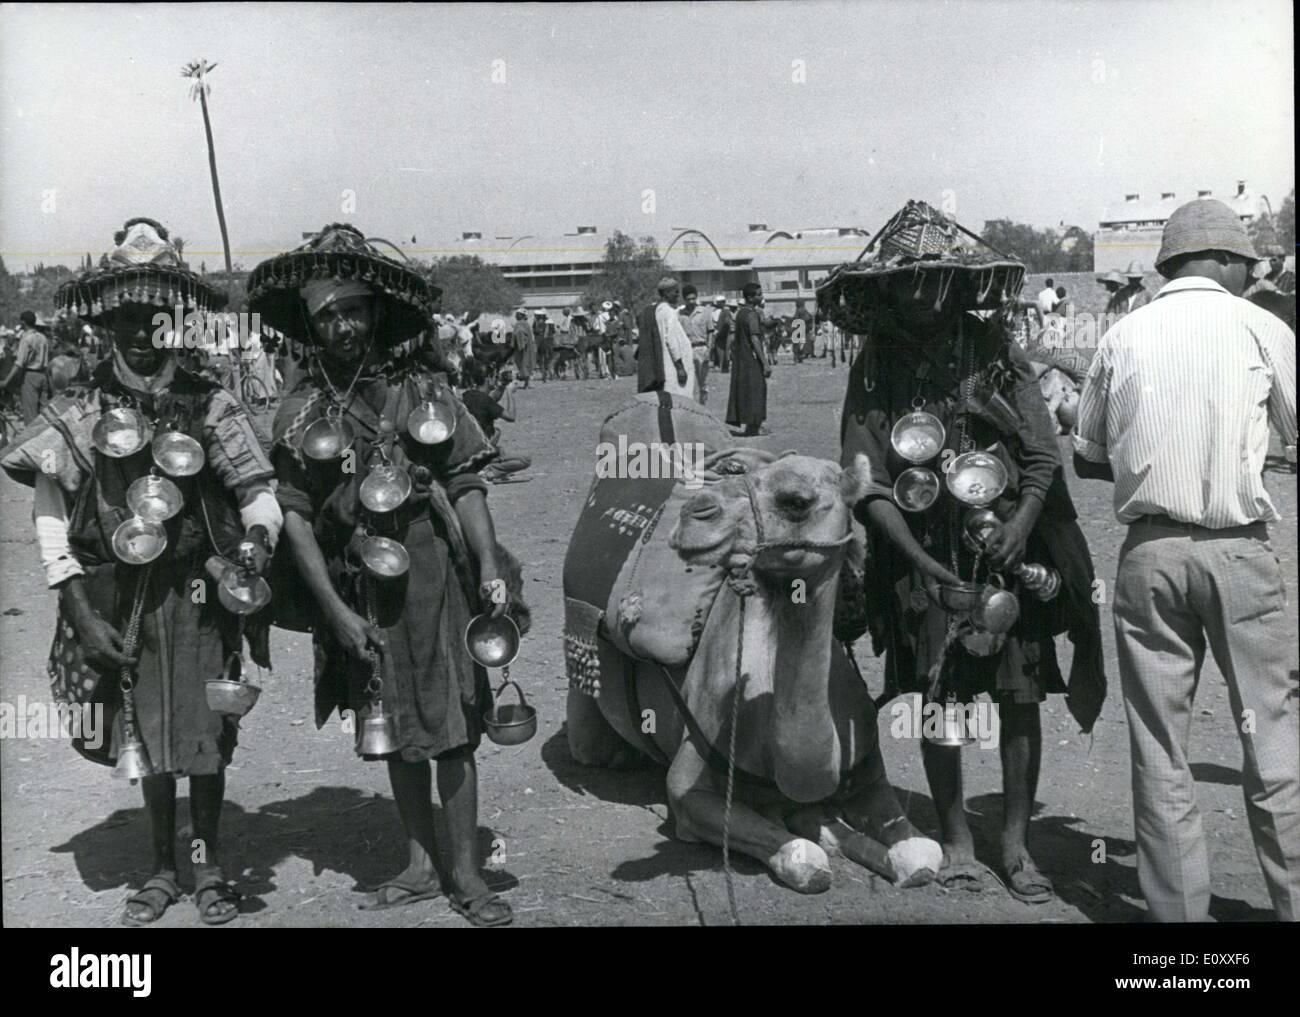 16 mars 1968 - l'on voit ici sont certains des vendeurs d'eau, toujours une denrée précieuse dans un pays désertique comme le Maroc, puisqu'ils participent à la traditionnelle mars chameau de Marrakech. Banque D'Images